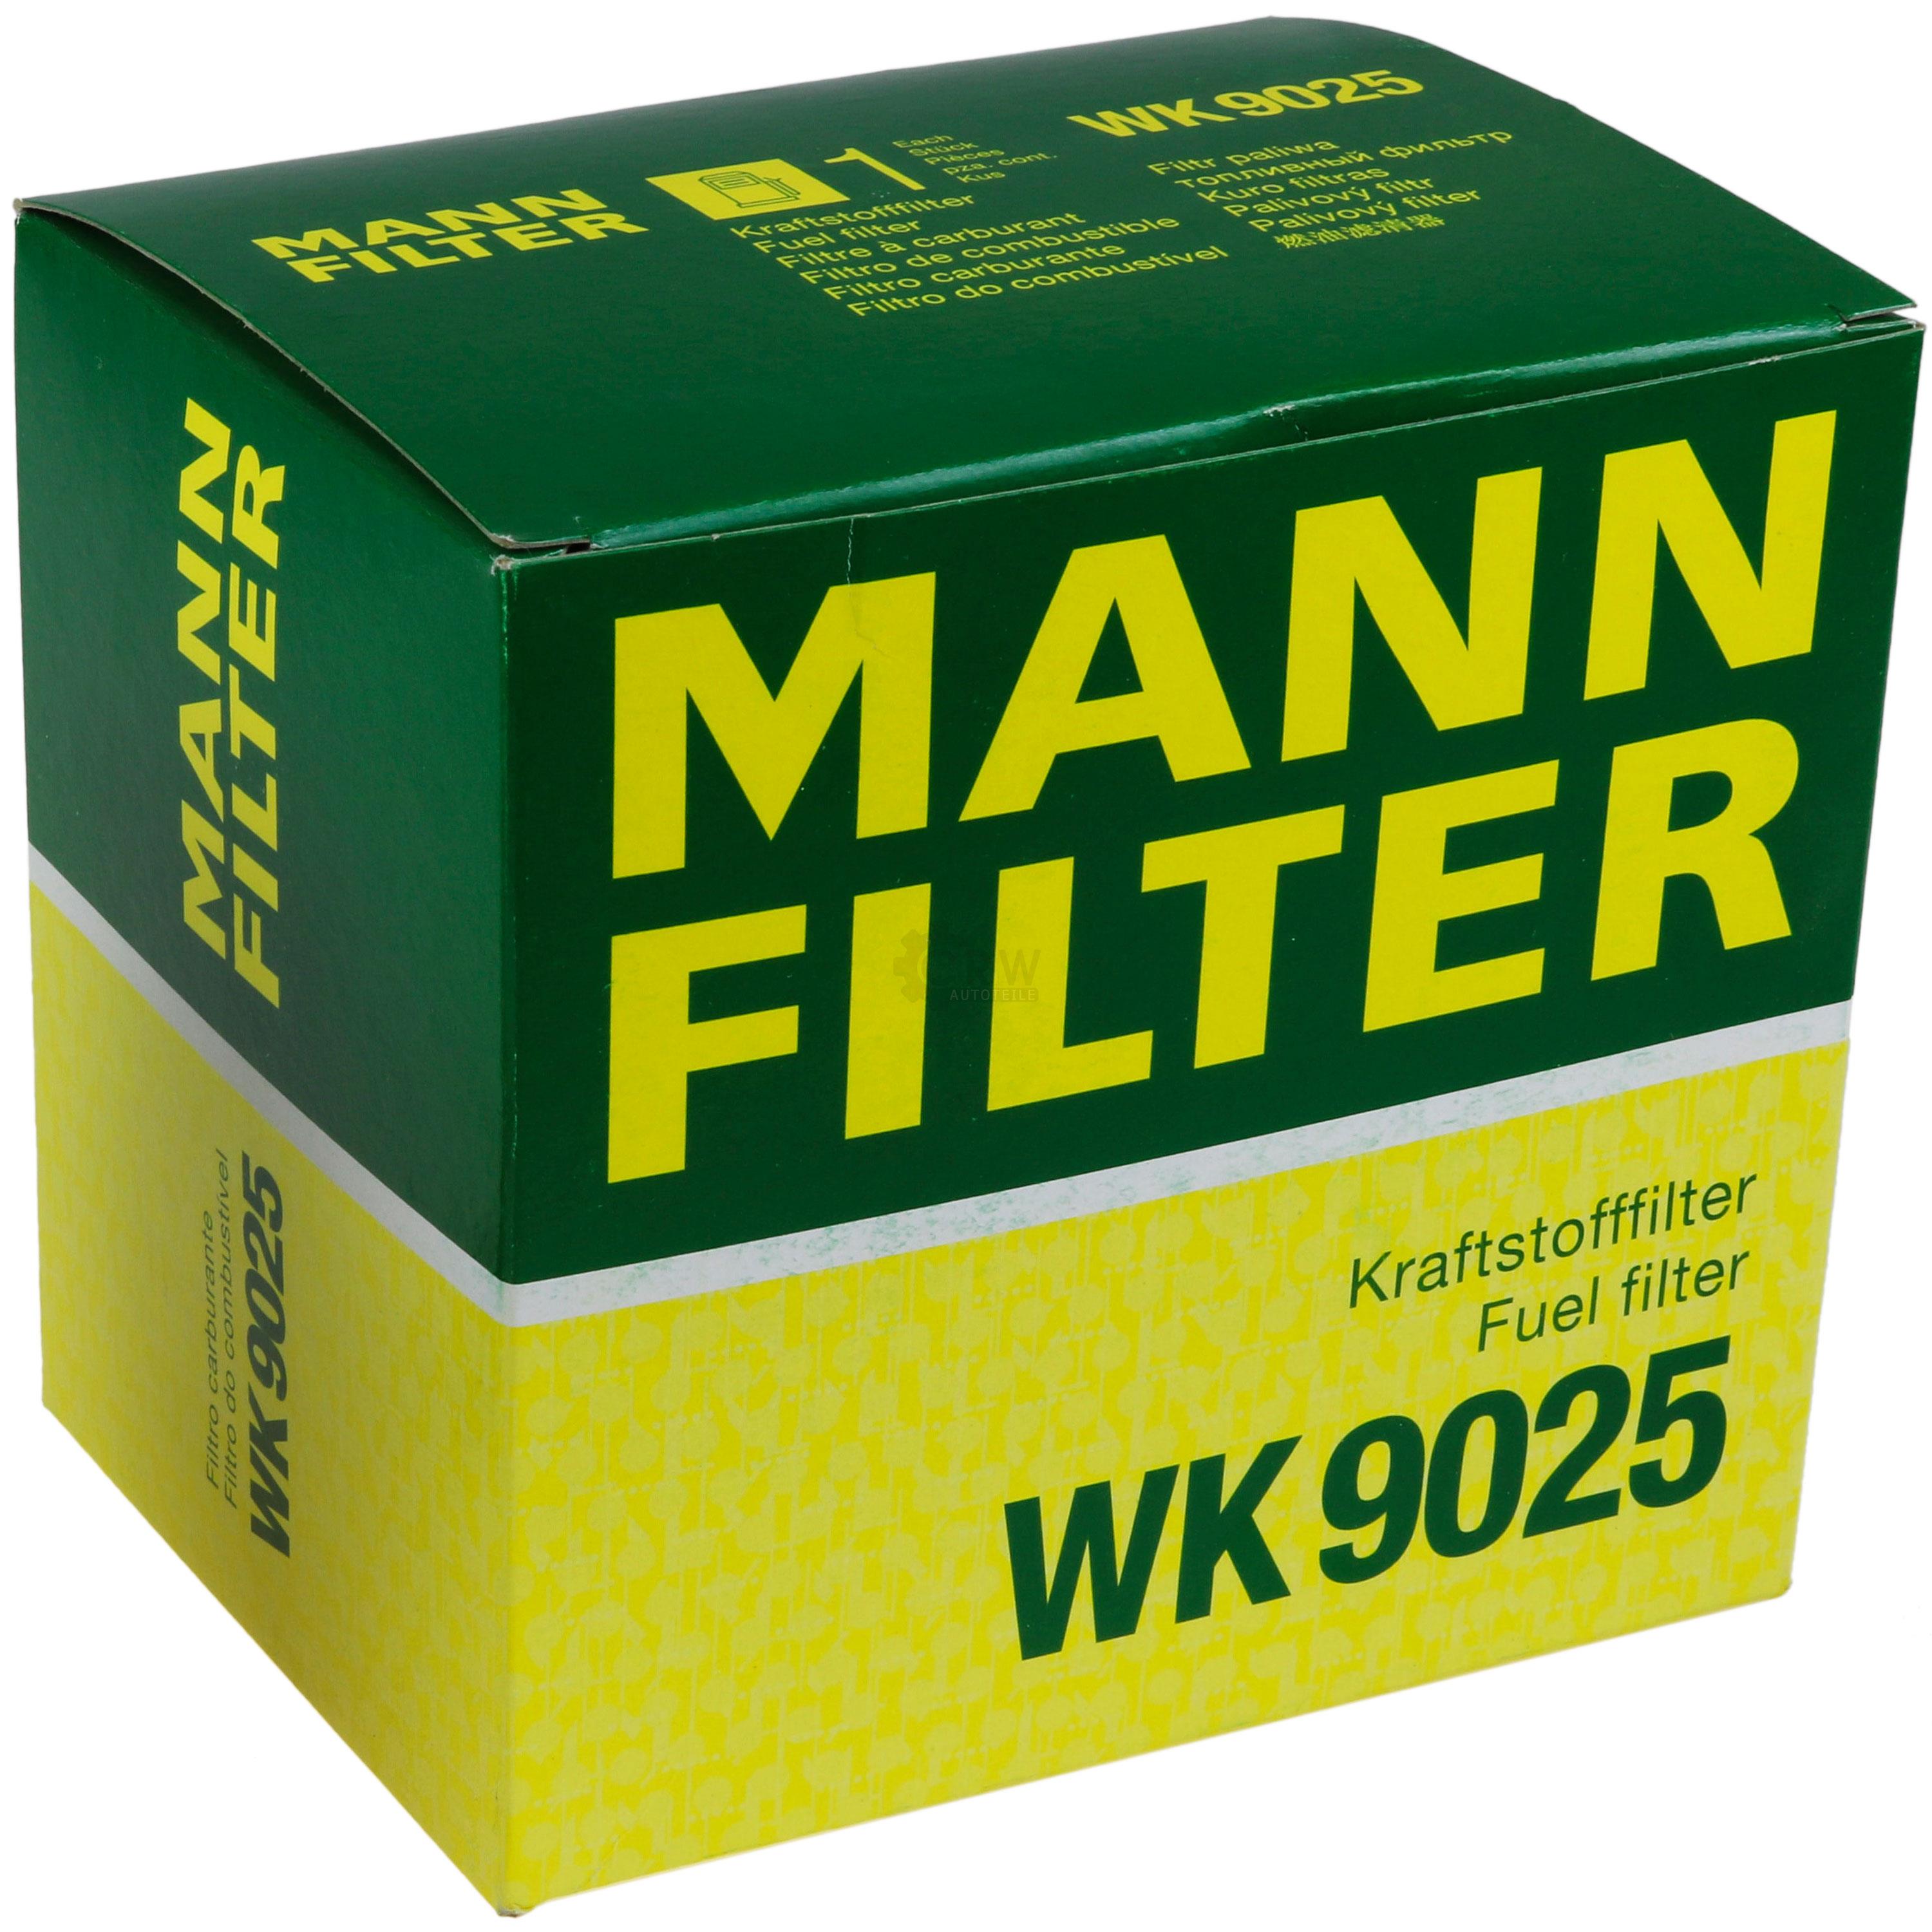 MANN-FILTER Kraftstofffilter WK 9025 Fuel Filter